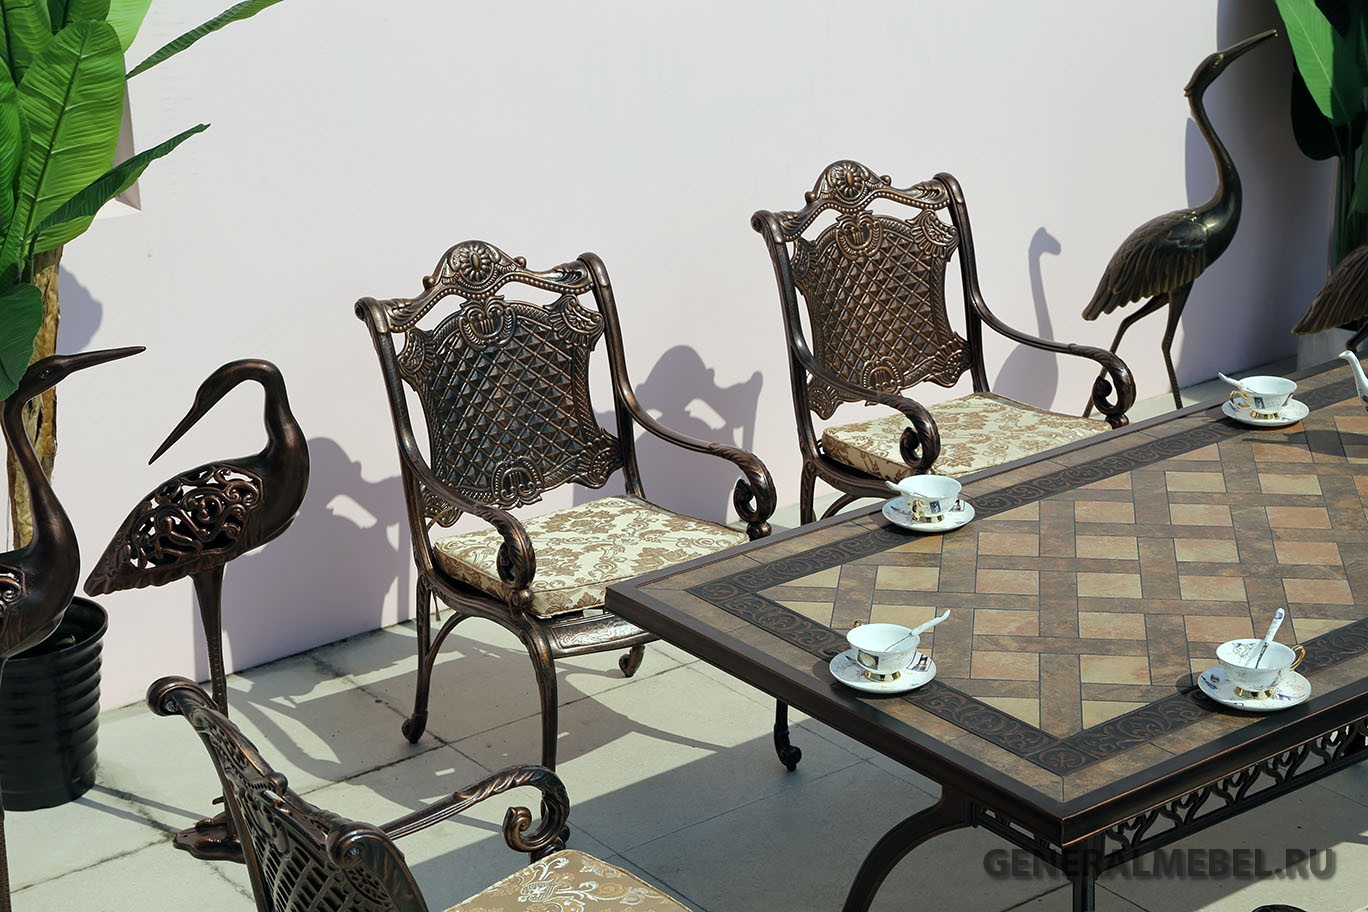 Стол Керамик литое подстолье из металла, столы и стулья для столовой, керамическая столешница, стол с плиткой литой из алюминия, стол для улицы в беседку и на террасу, мебель на веранду металлическая из литого алюминия и чугуна